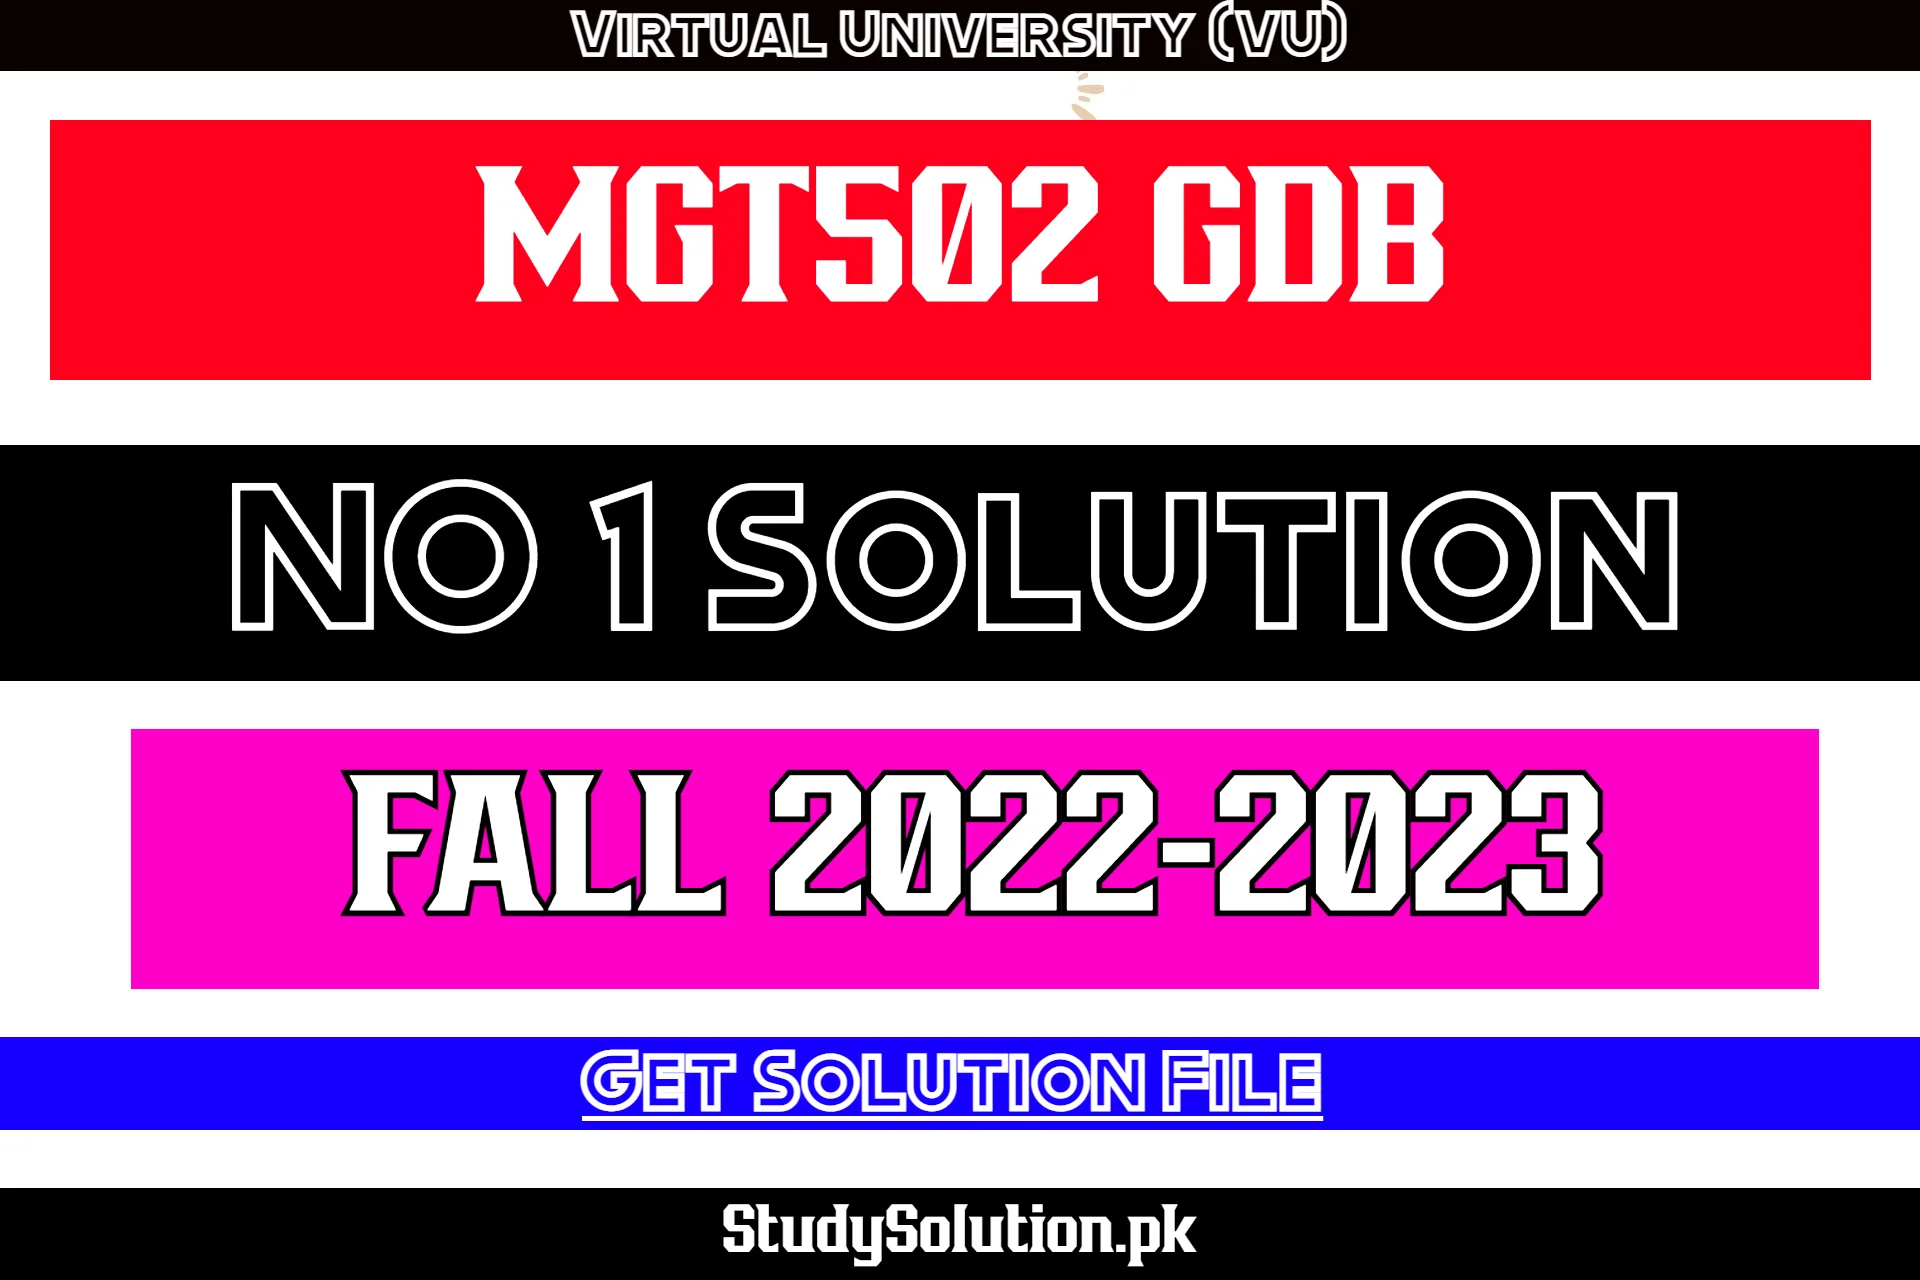 MGT502 GDB No 1 Solution Fall 2022